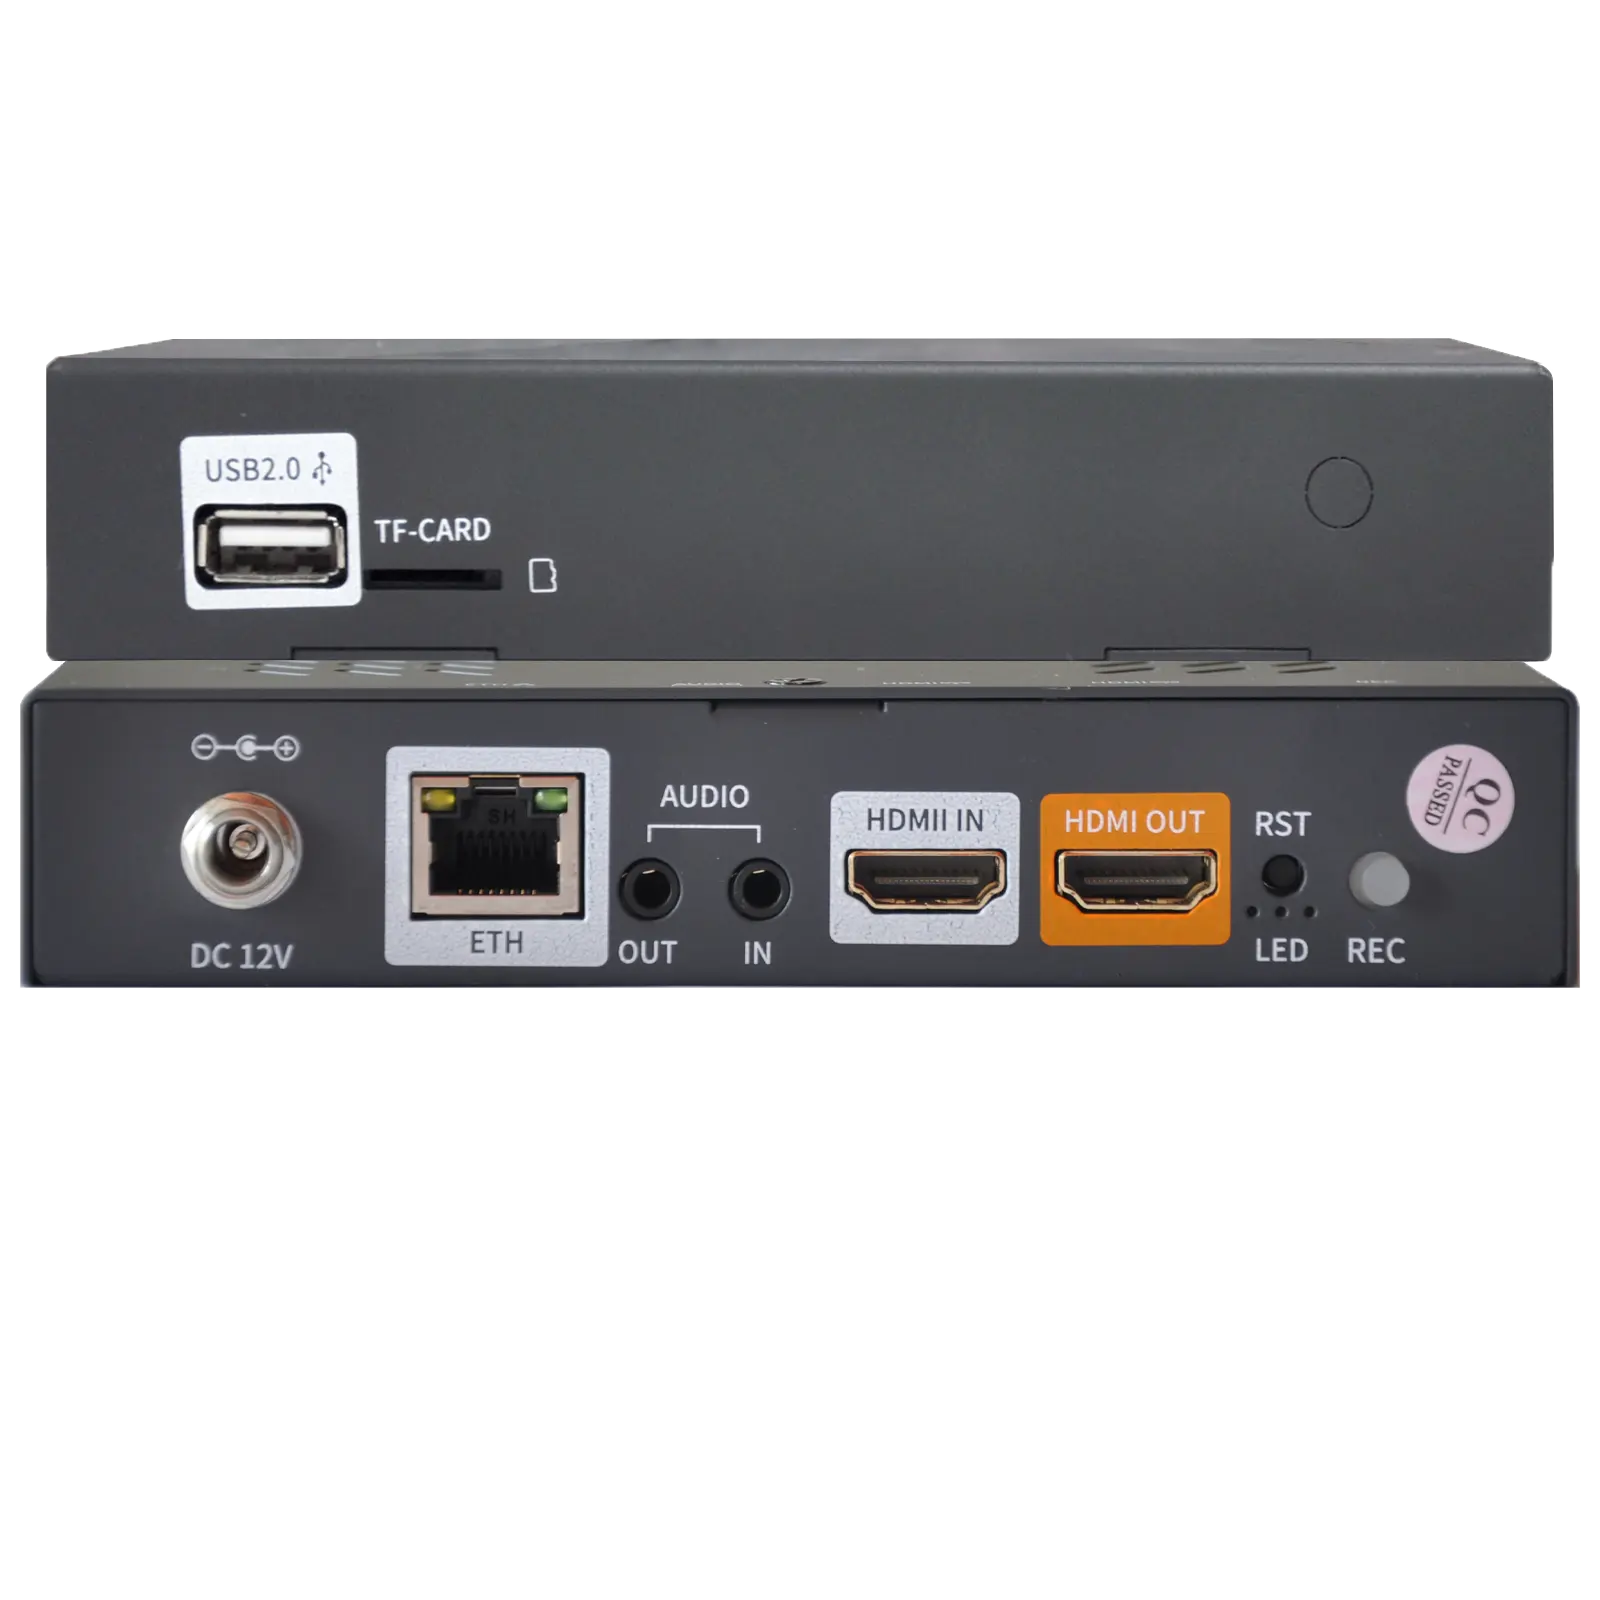 С низкой задержкой HD видео для IP потокового оборудования, одноканальный Full HD кодировщик для IPTV